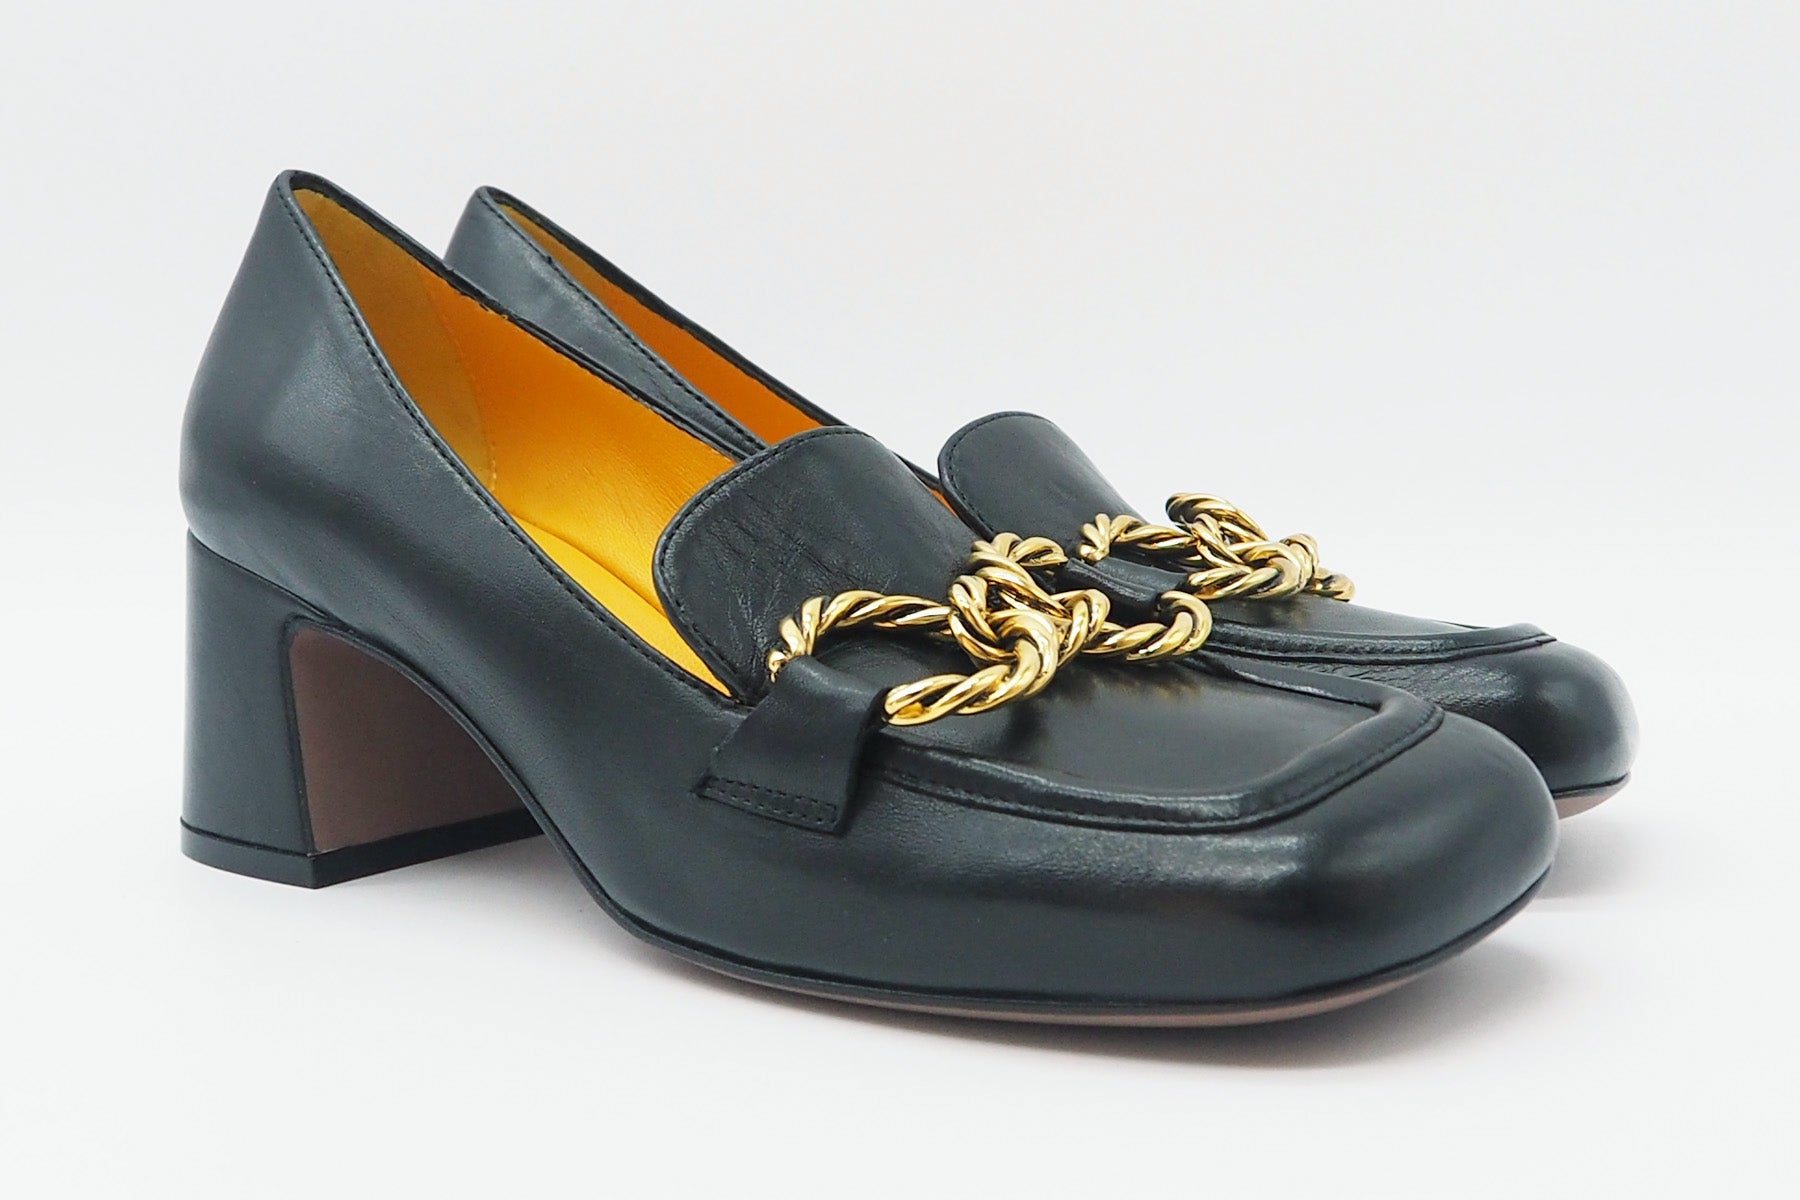 Damen Loafer mit Absatz aus Glattleder in Schwarz mit goldener Kette Damen Loafers & Schnürer Mara Bini